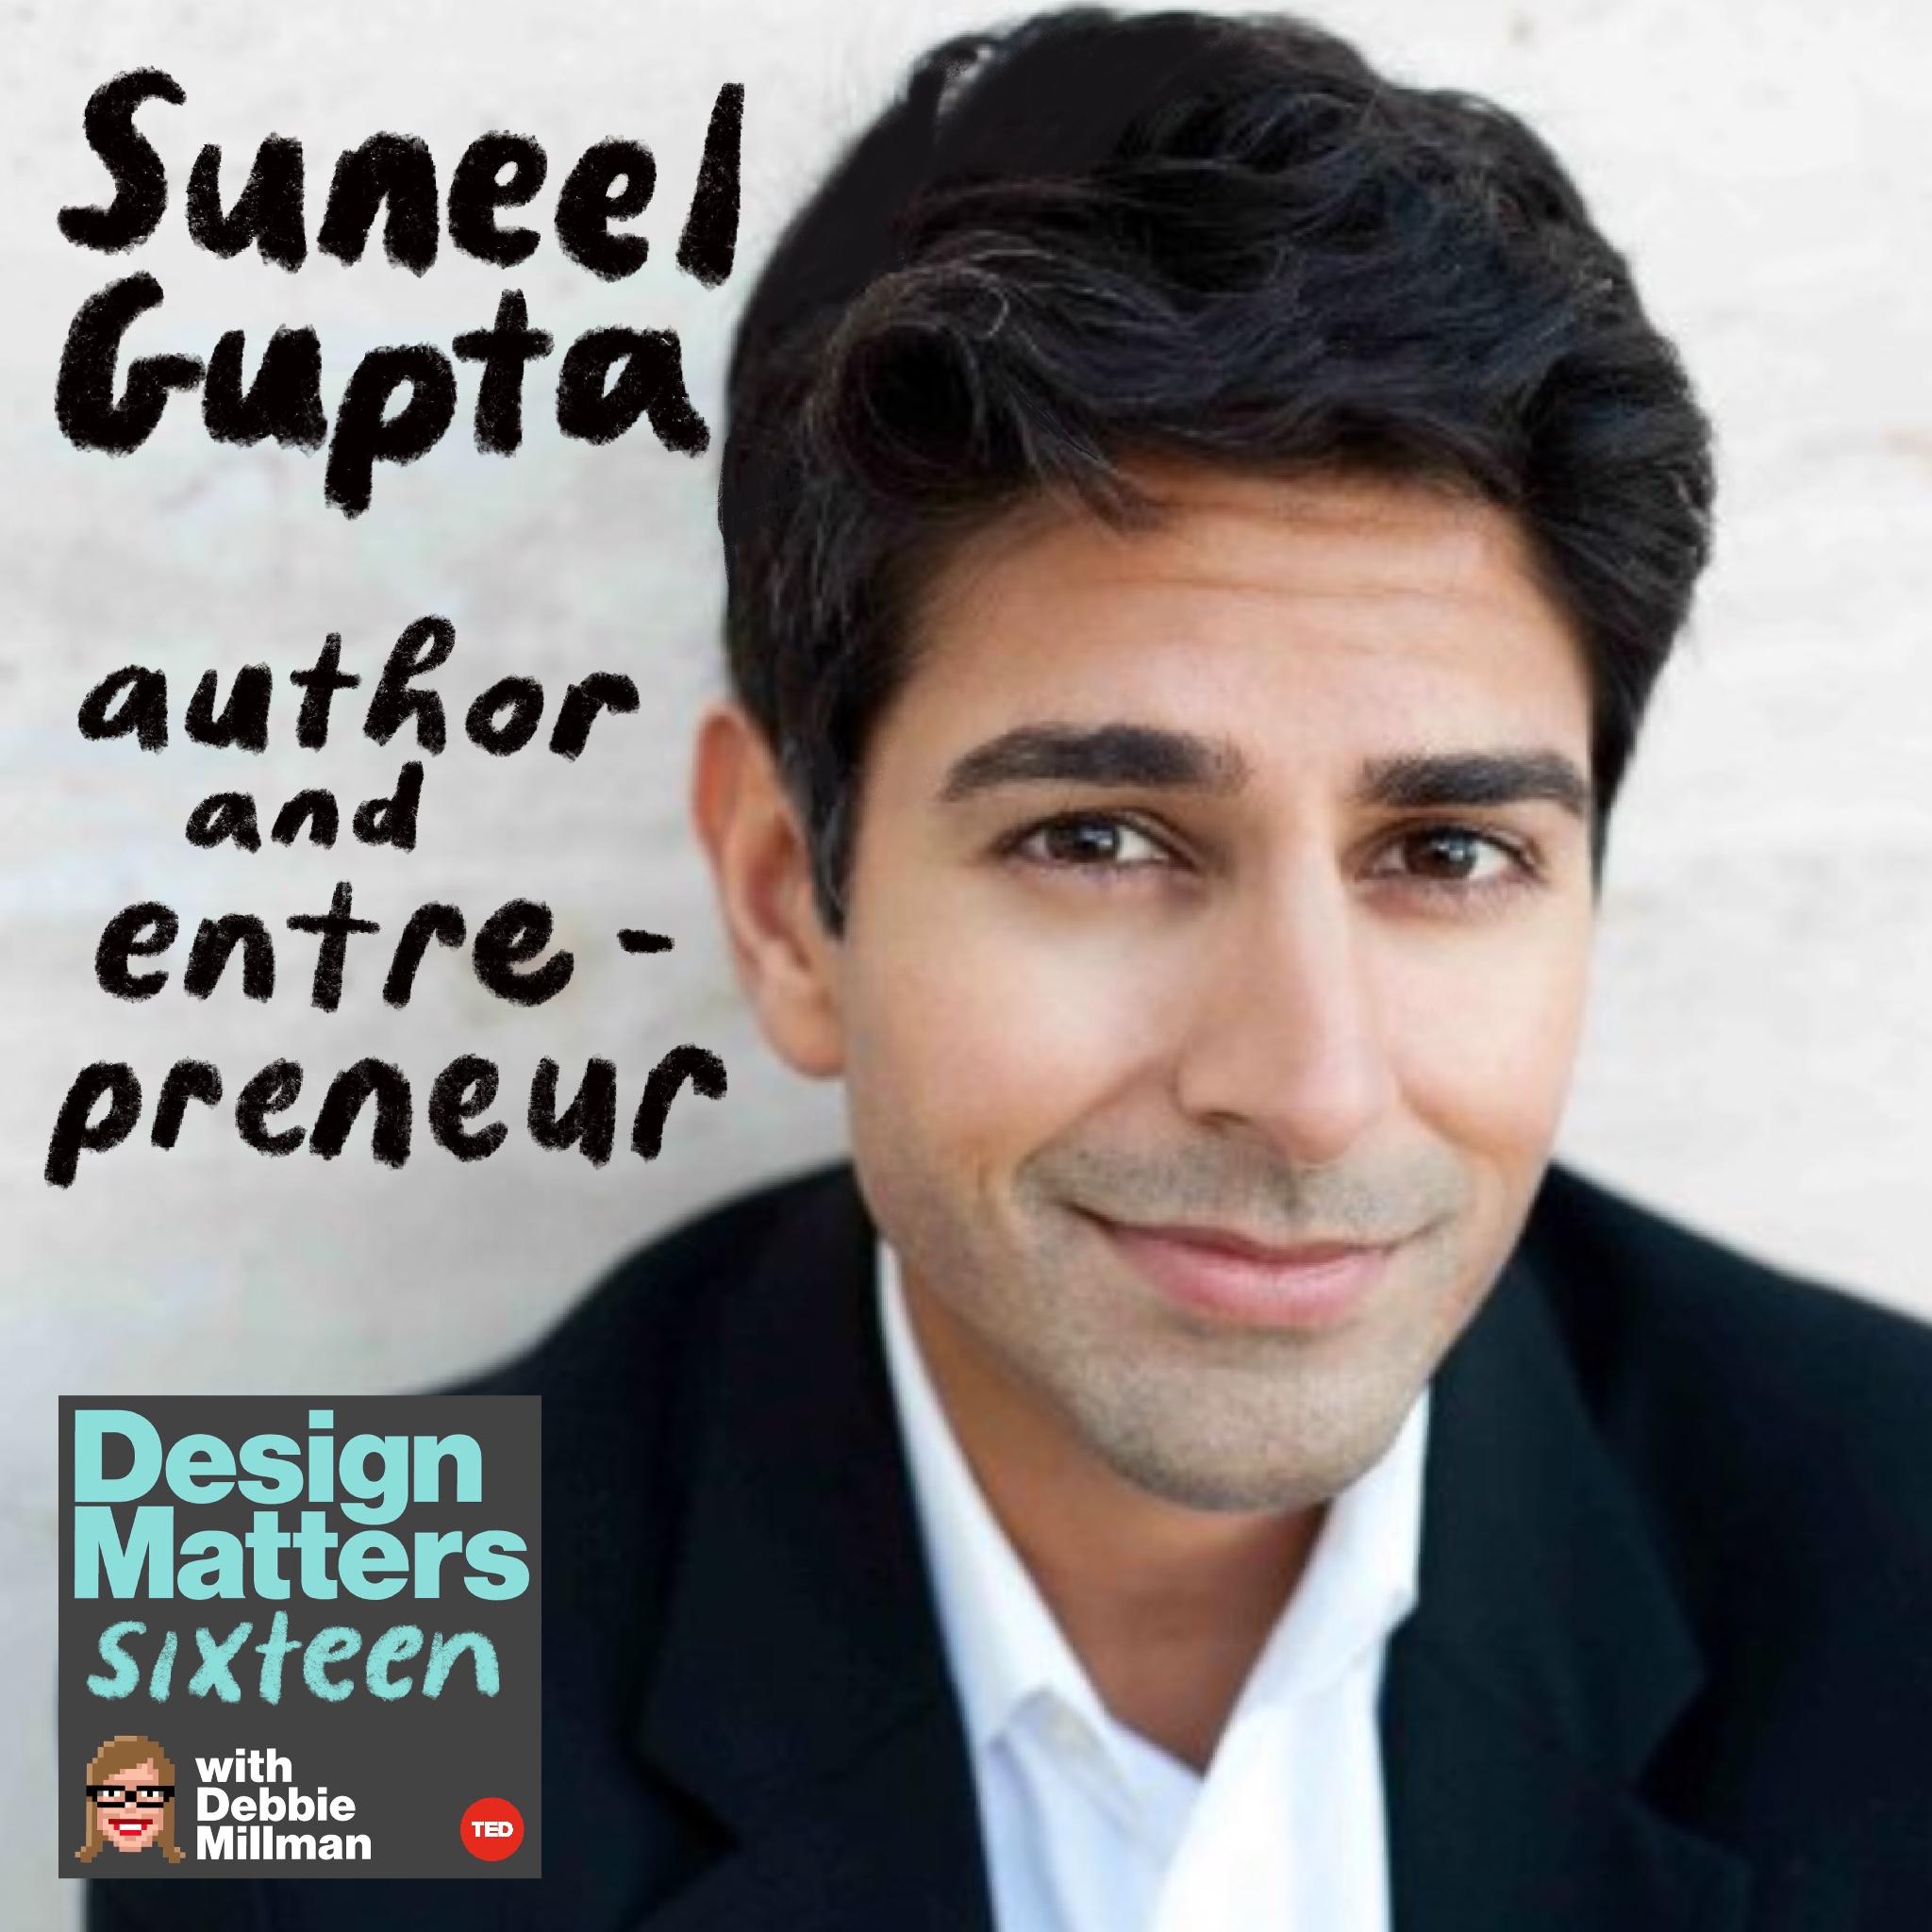 Thumbnail for "Suneel Gupta".